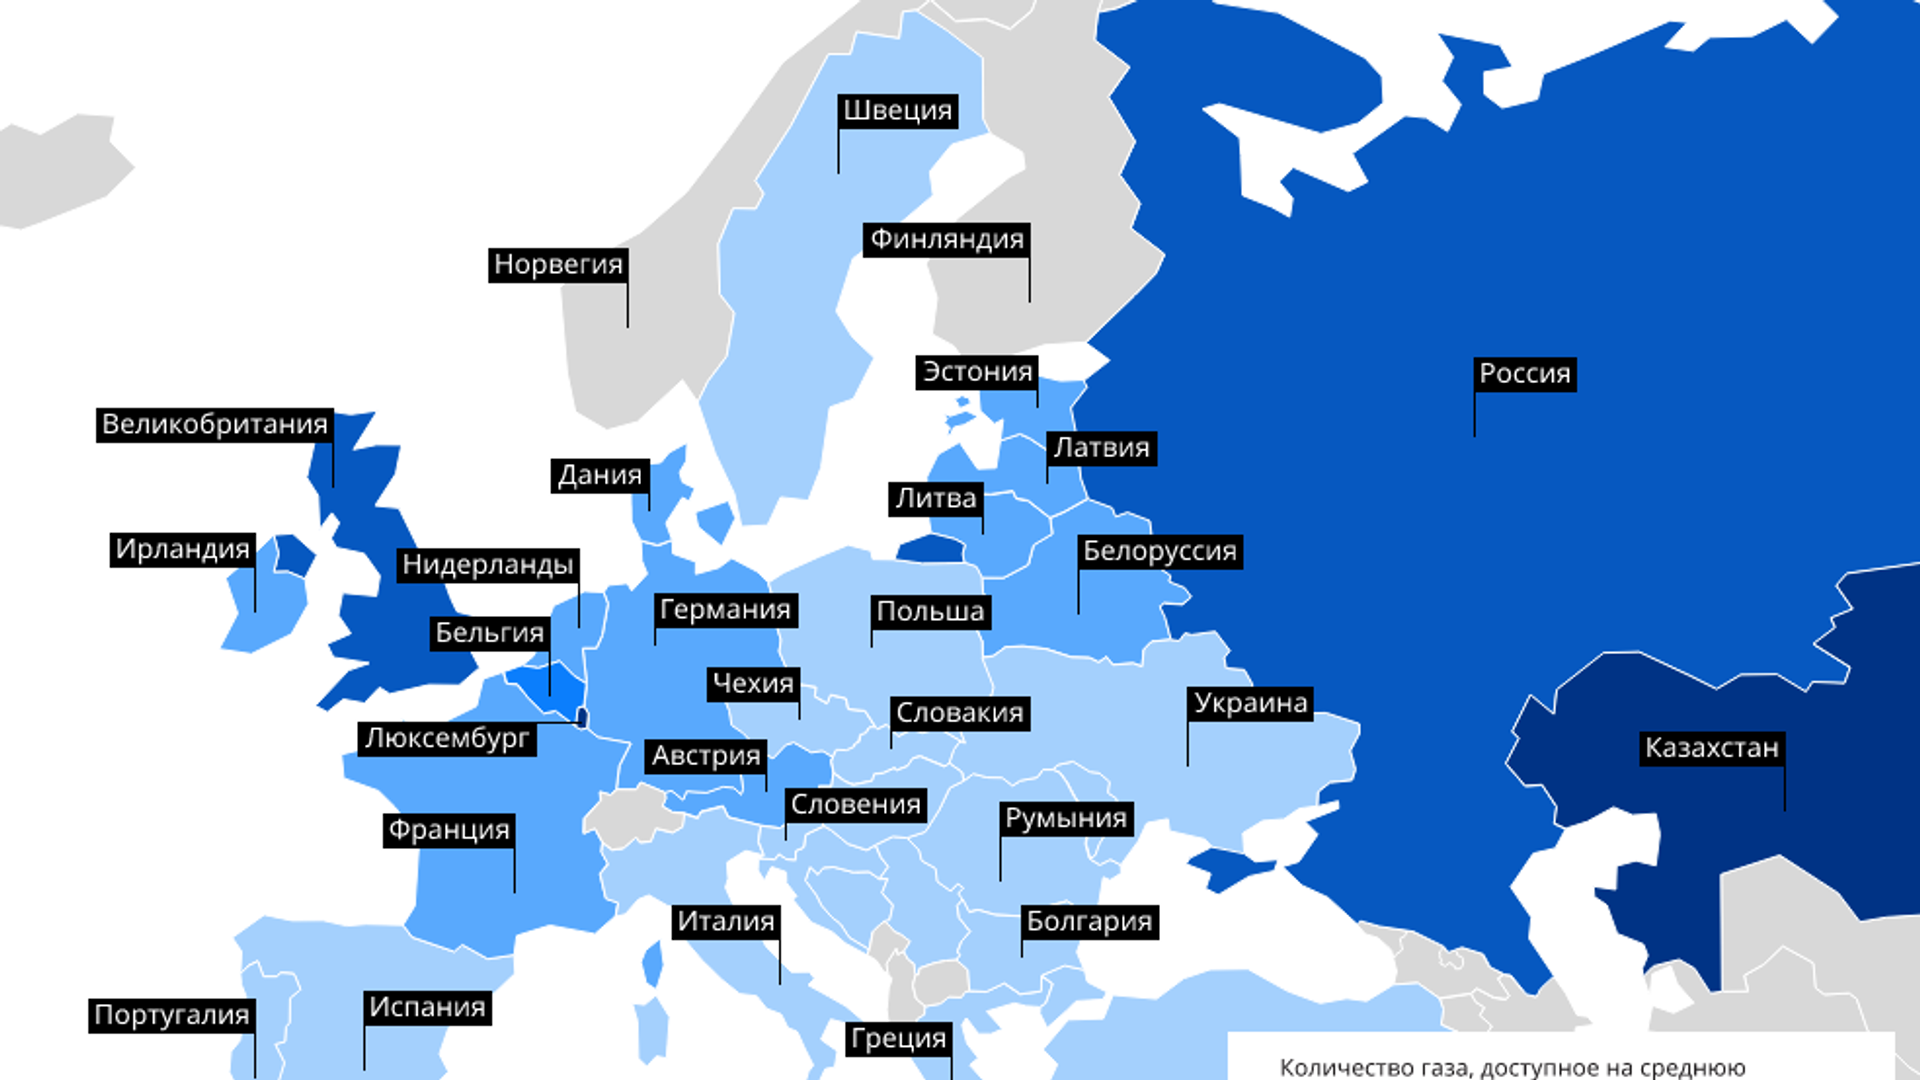 Страны европы федерациями. ГАЗ В Европе. Природный ГАЗ Европа. ГАЗ для населения в Европе. Бюджеты стран Европы.